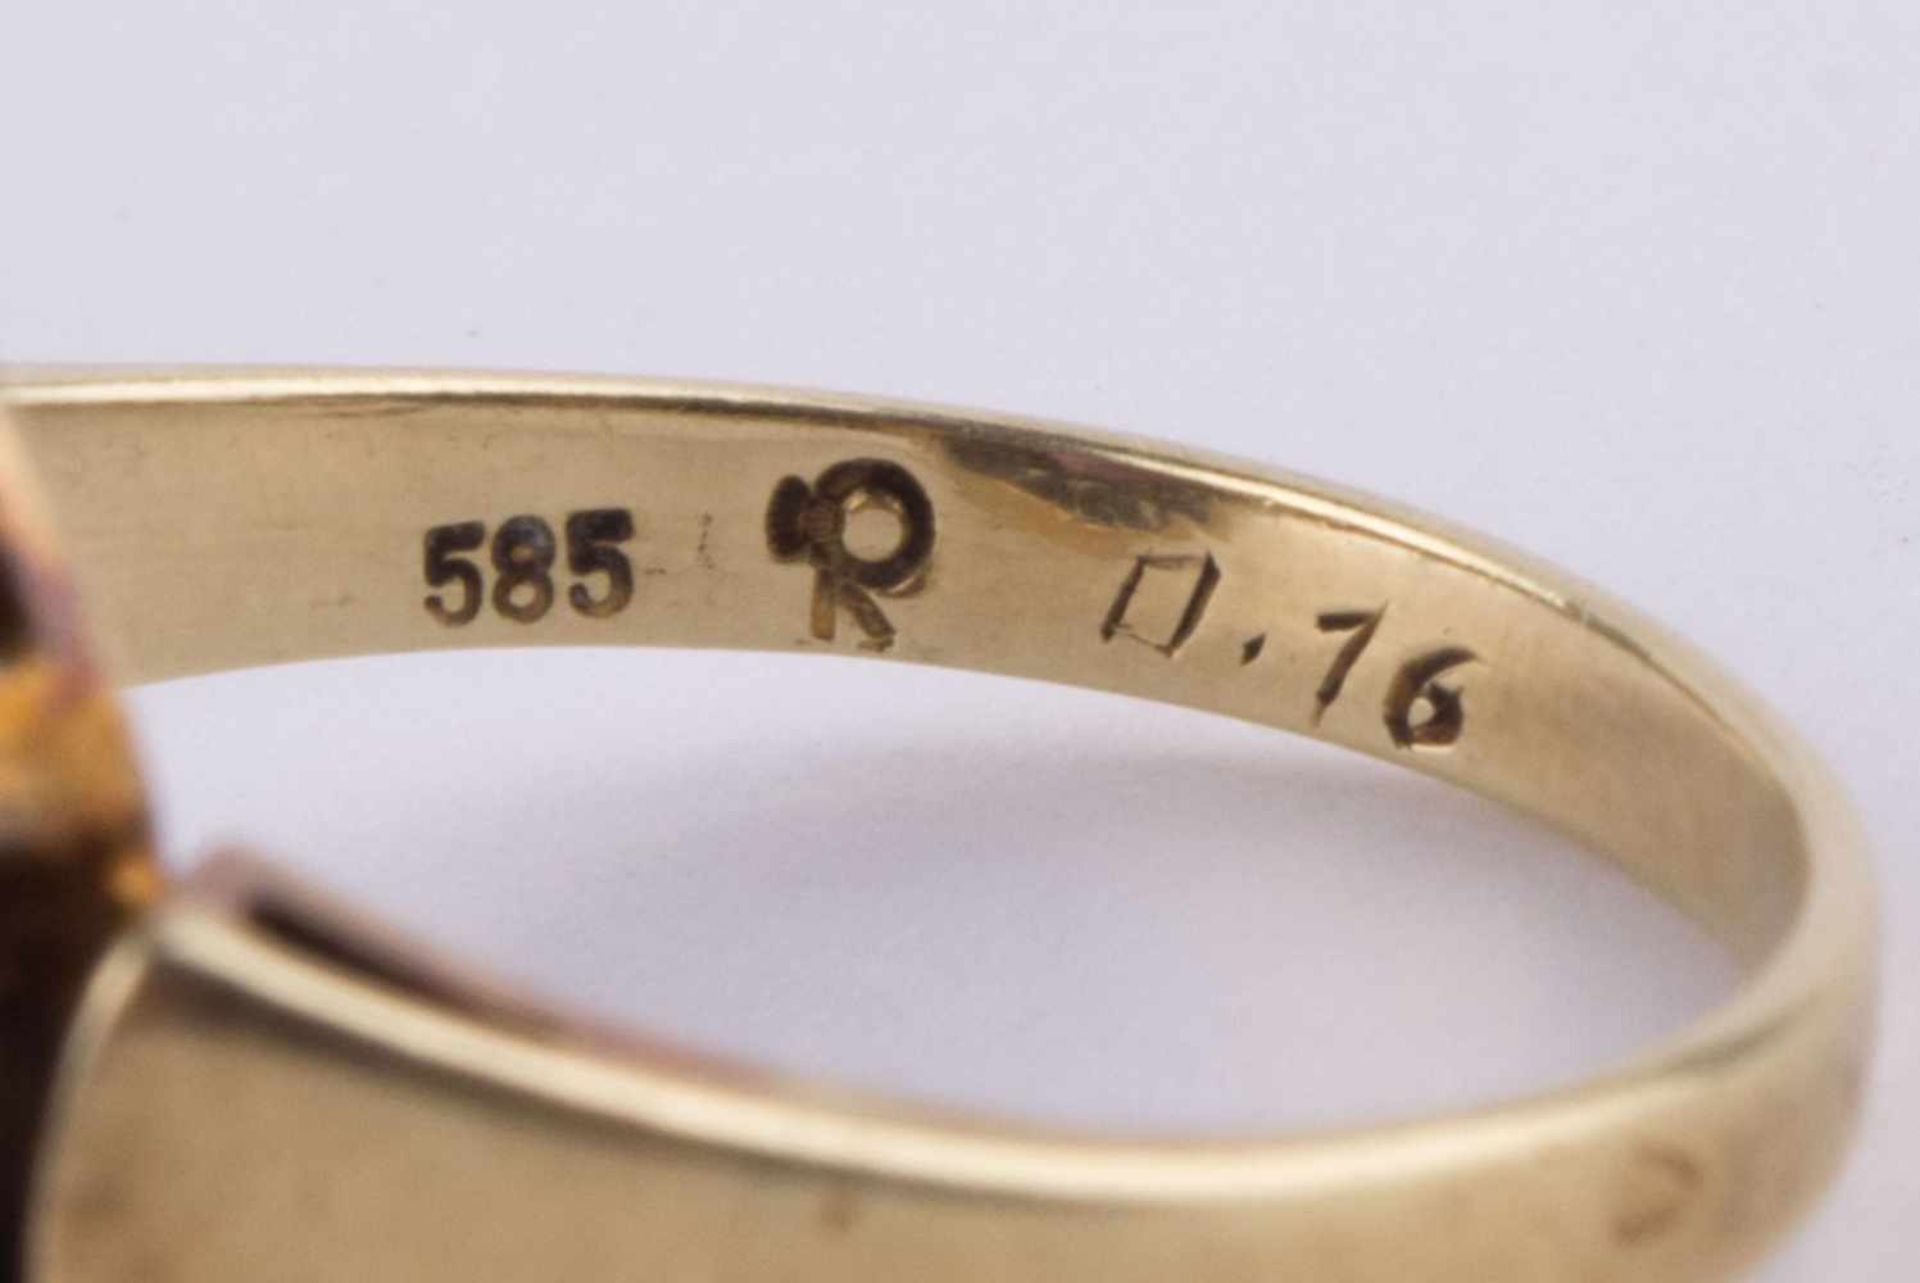 Damen Amethyst-Diamantring / Women's amethyst-diamond gold ring GG 585/000, RG ca. 58, 8 kleine - Bild 10 aus 10